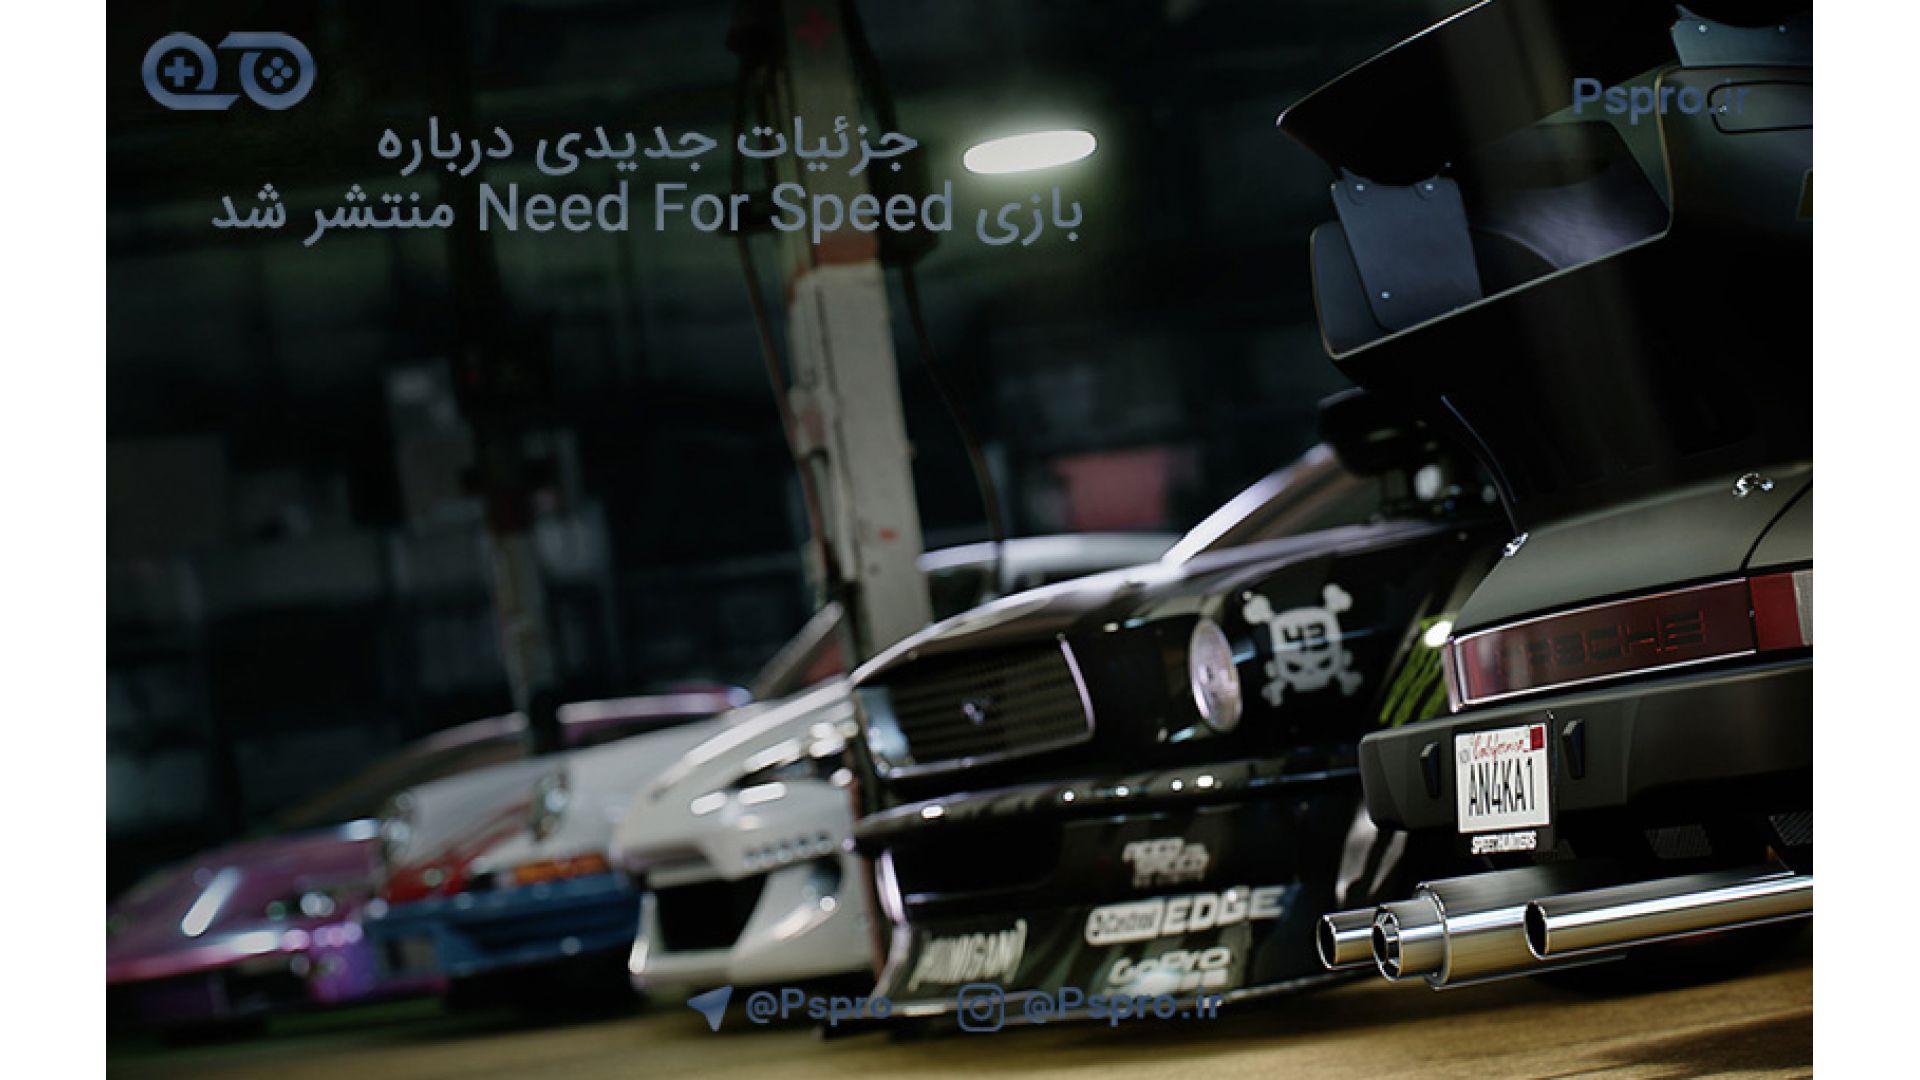 جزئیات جدیدی درباره بازی Need For Speed منتشر شد